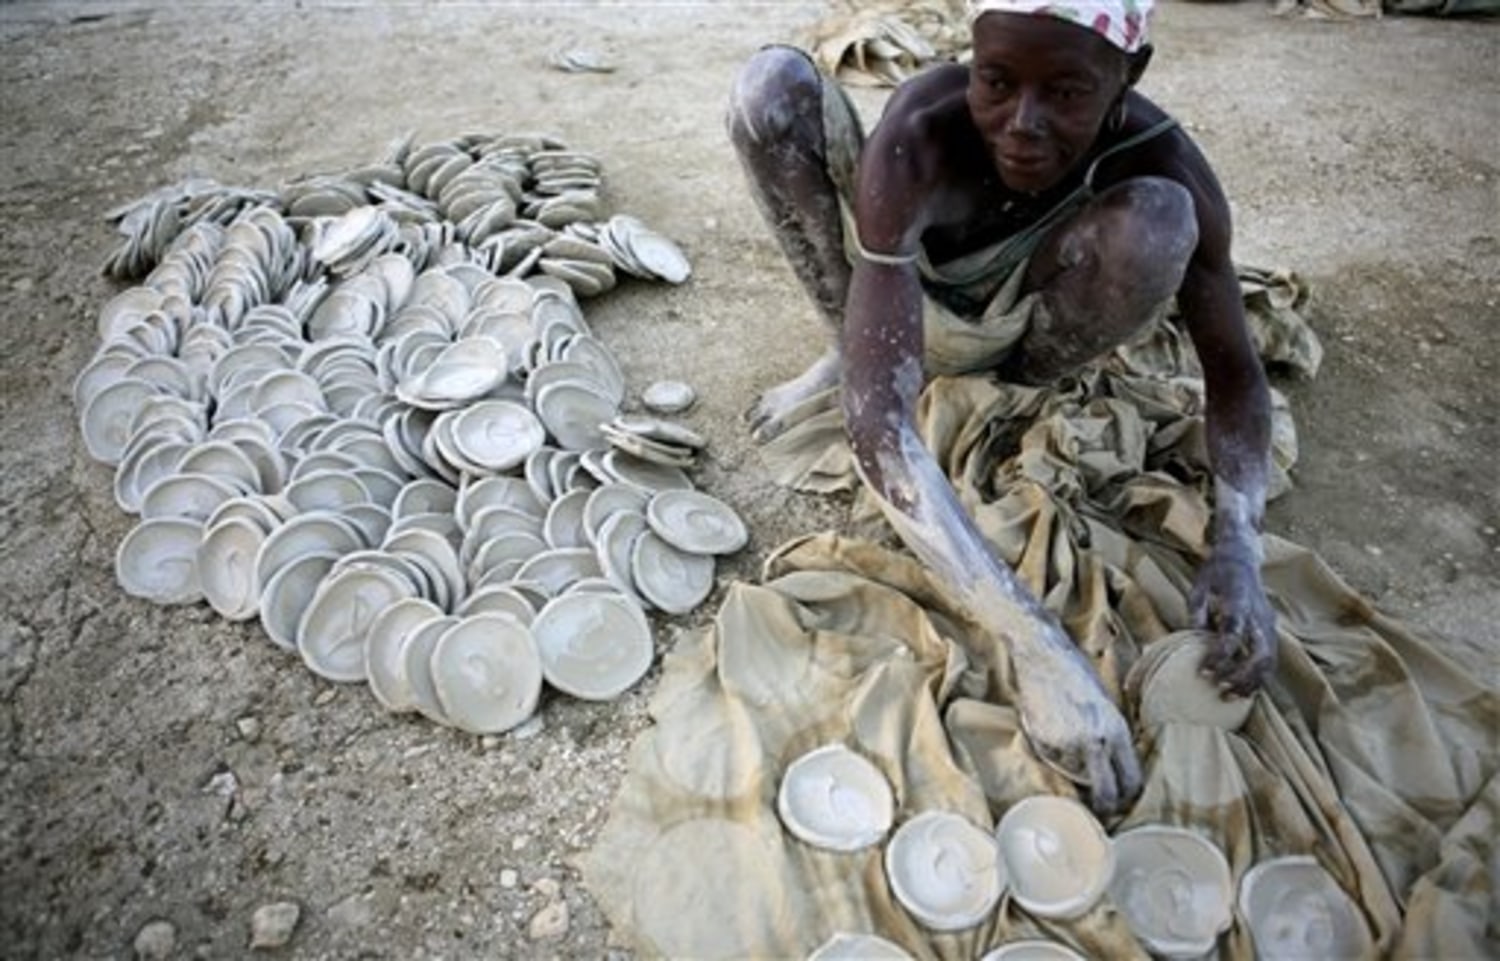 Pentru unii locuitori din Haiti, aceasta este singura hrană pe care o consumă